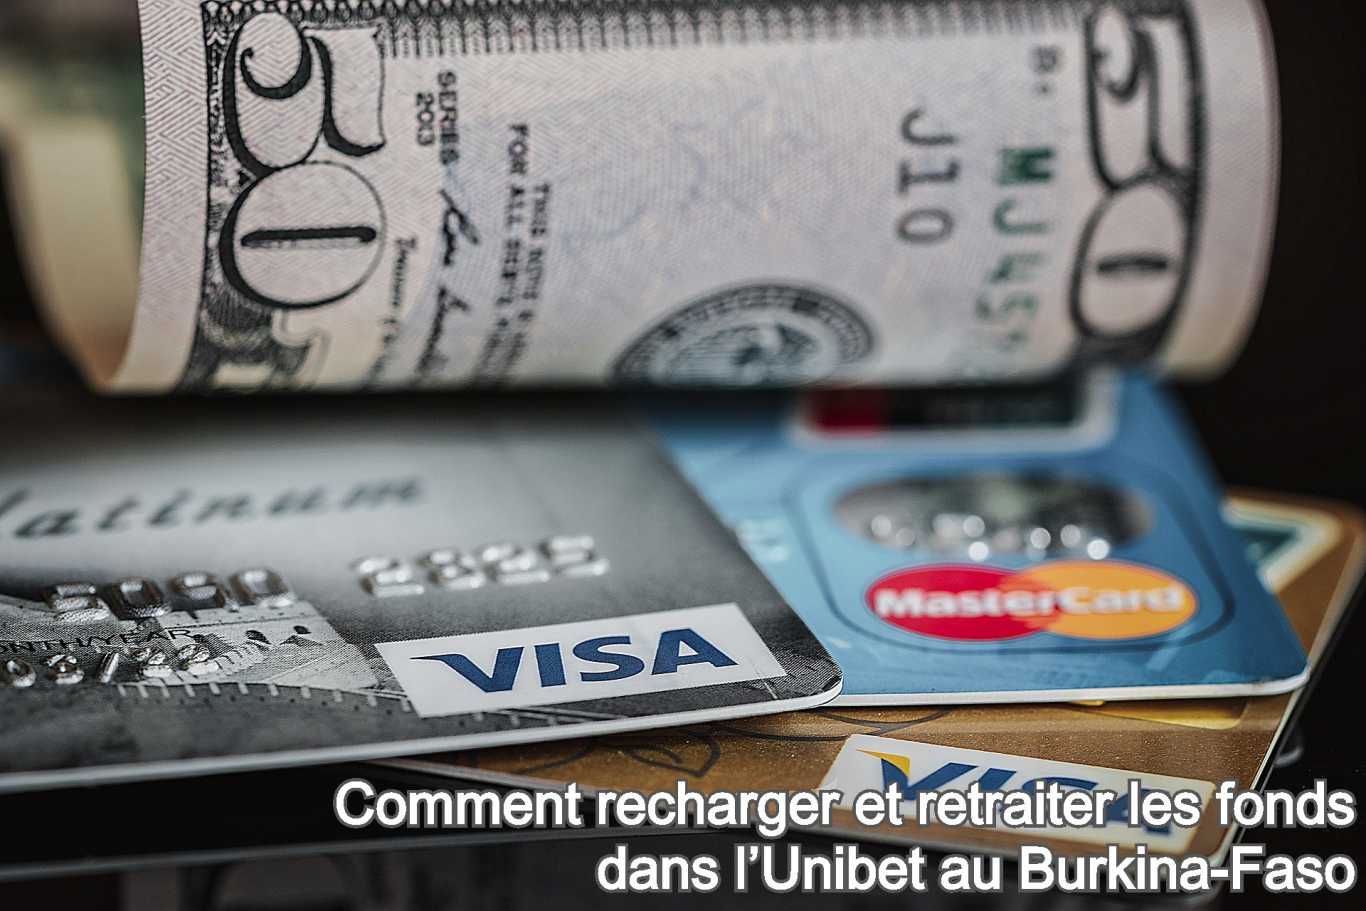 Comment recharger et retraiter les fonds dans l’Unibet au Burkina-Faso